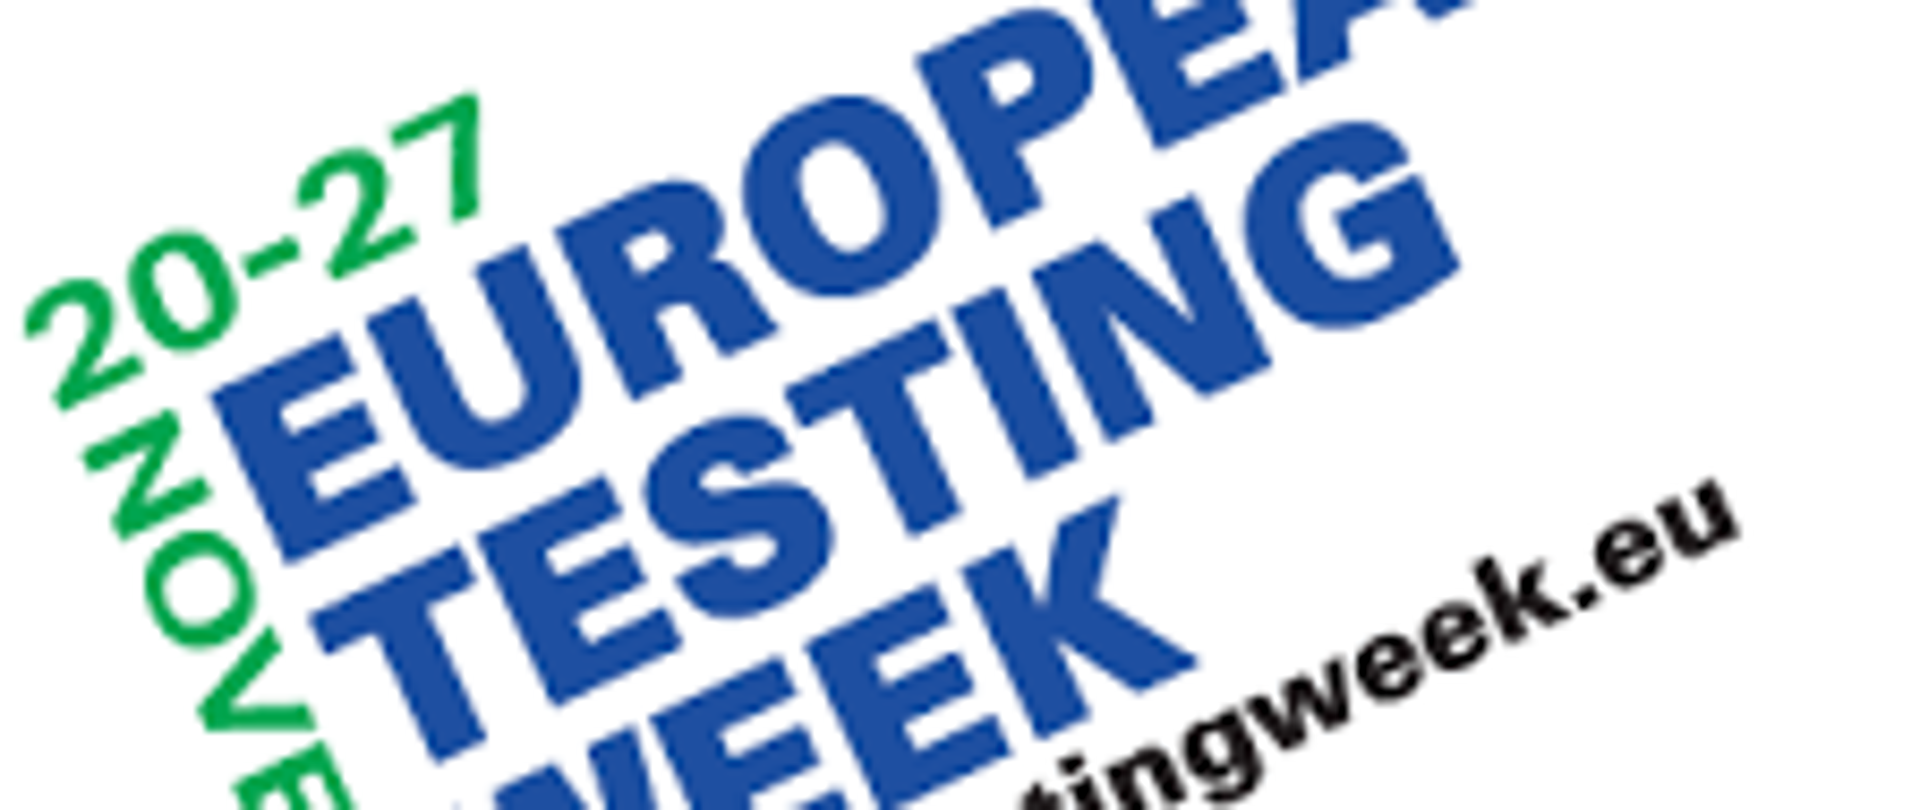 rysunek loga akcji "Europejski tydzień testowania w kierunku zakażenia wirusem HIV" w dniach 20-27 listopada 2020 r.